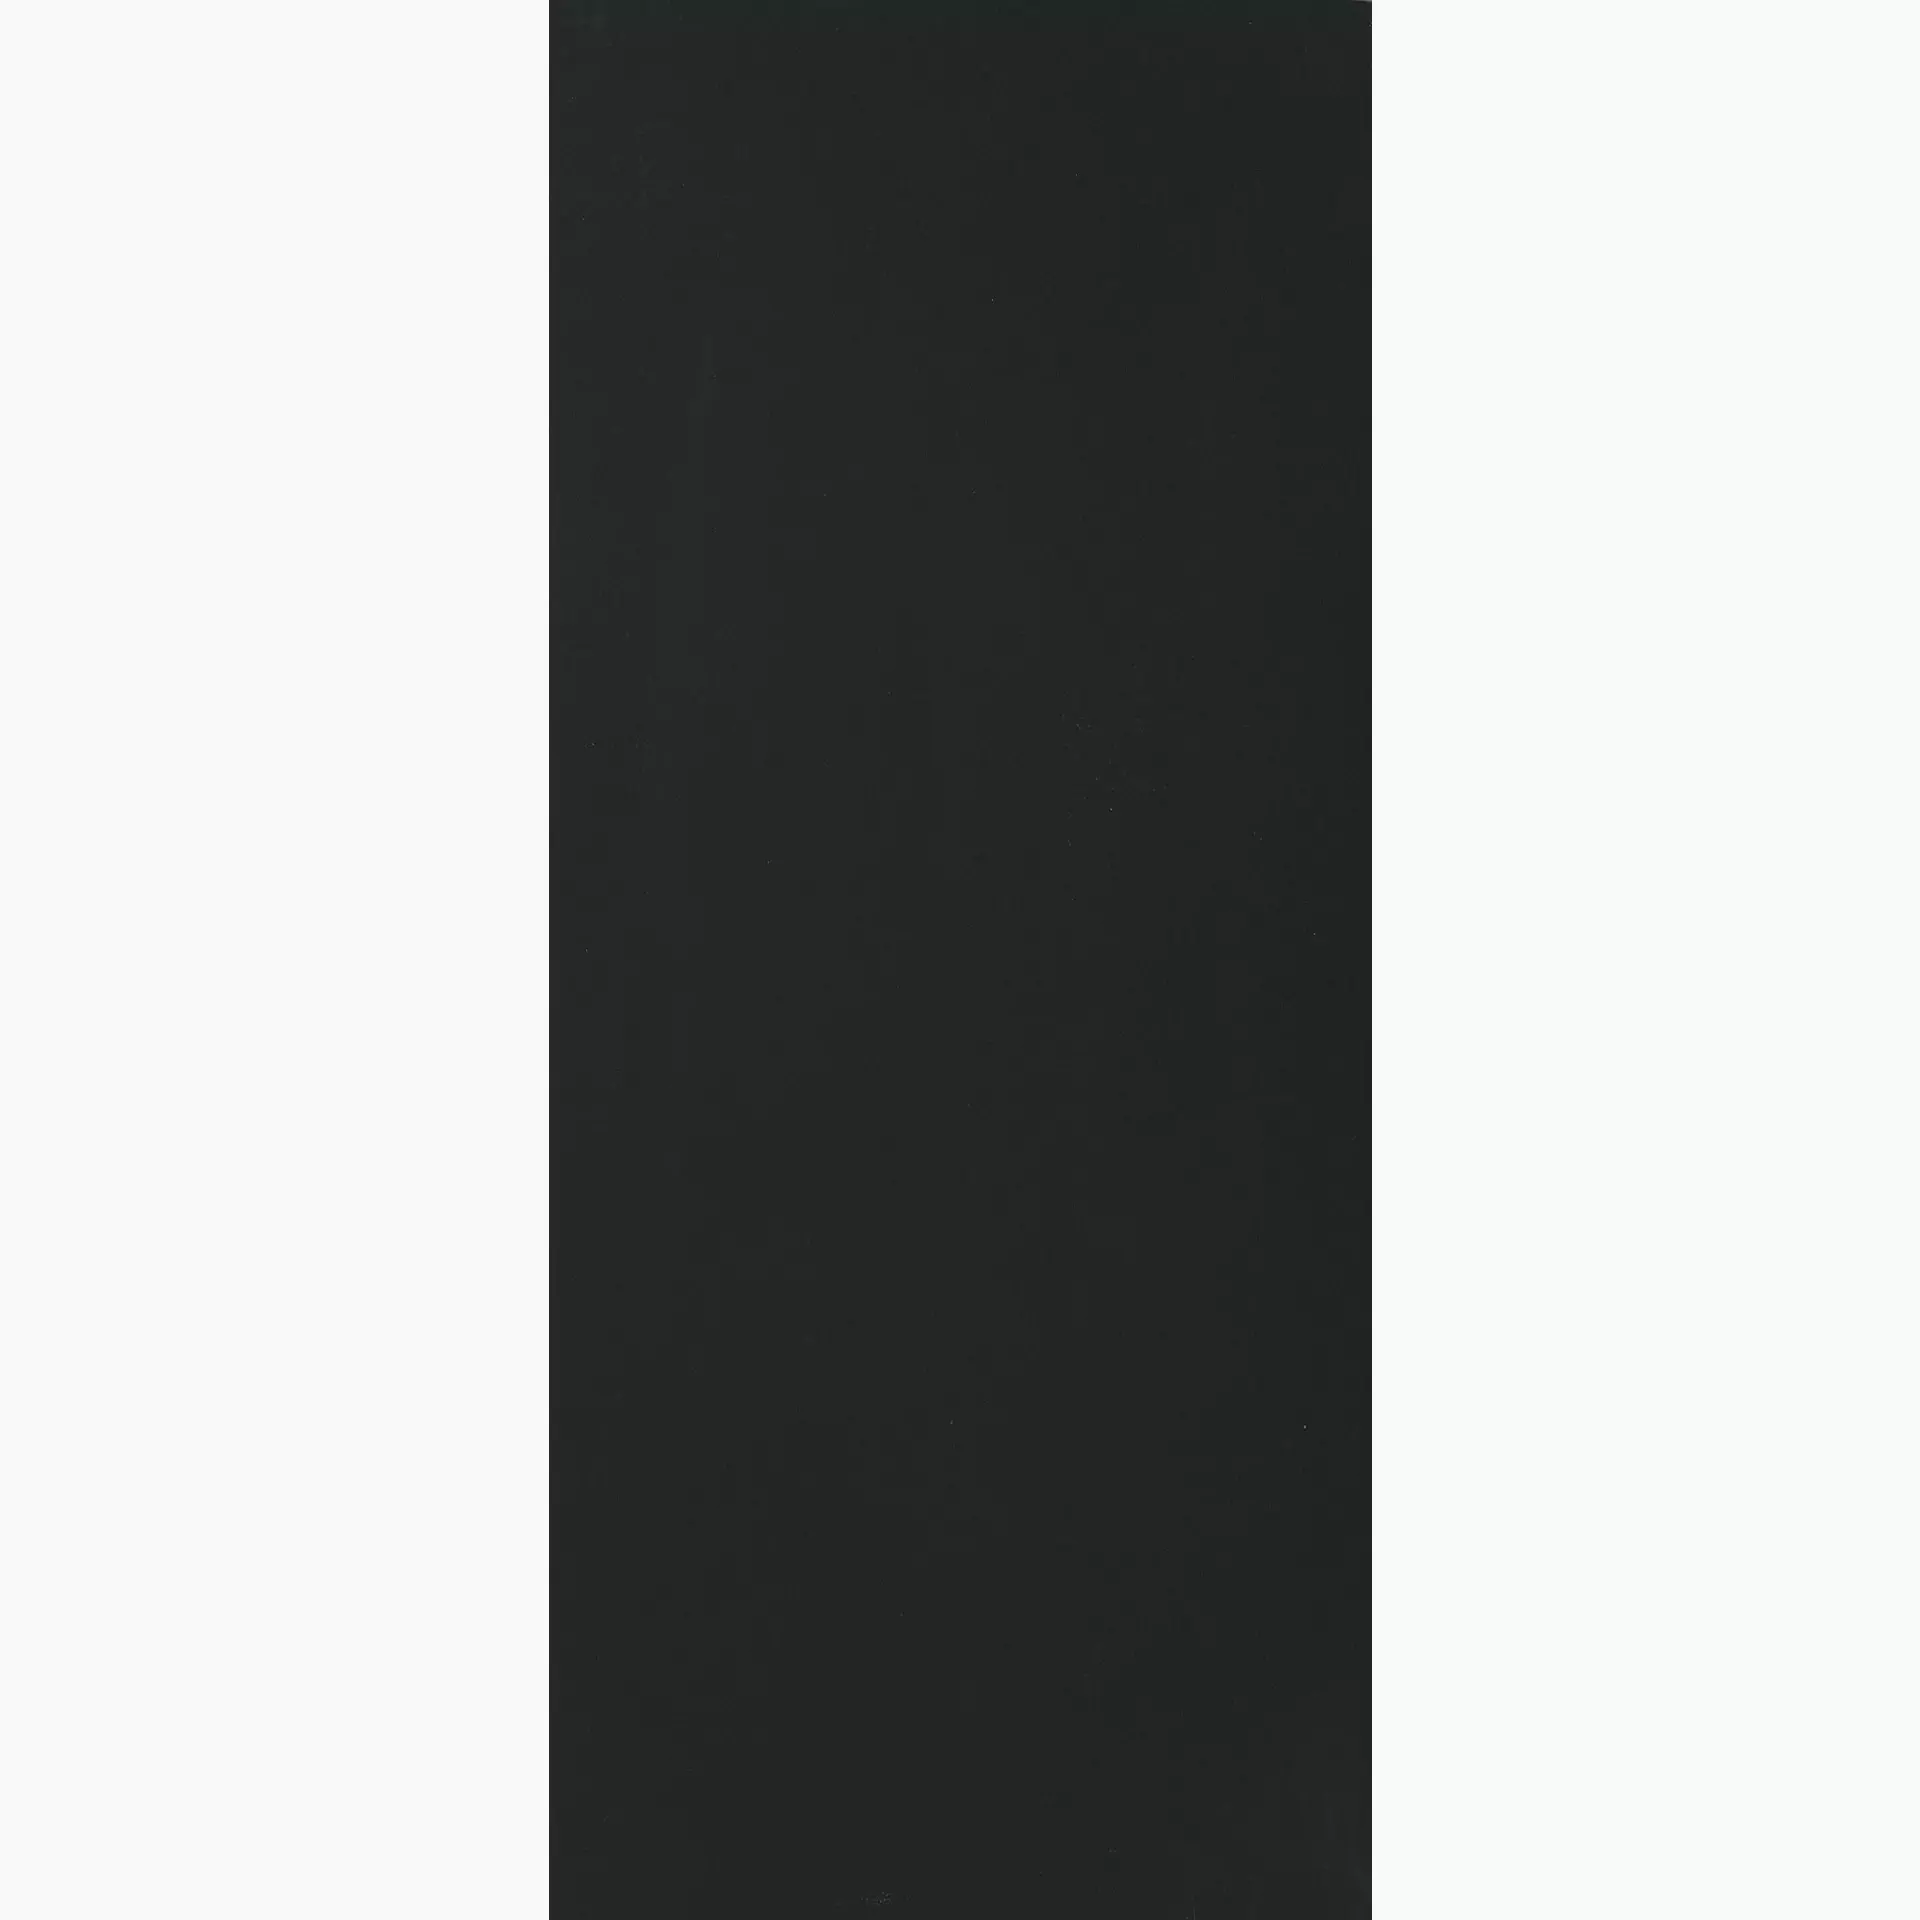 Florim B&W Marble Black Levigato Black 765525 geschliffen 120x280cm rektifiziert 6mm